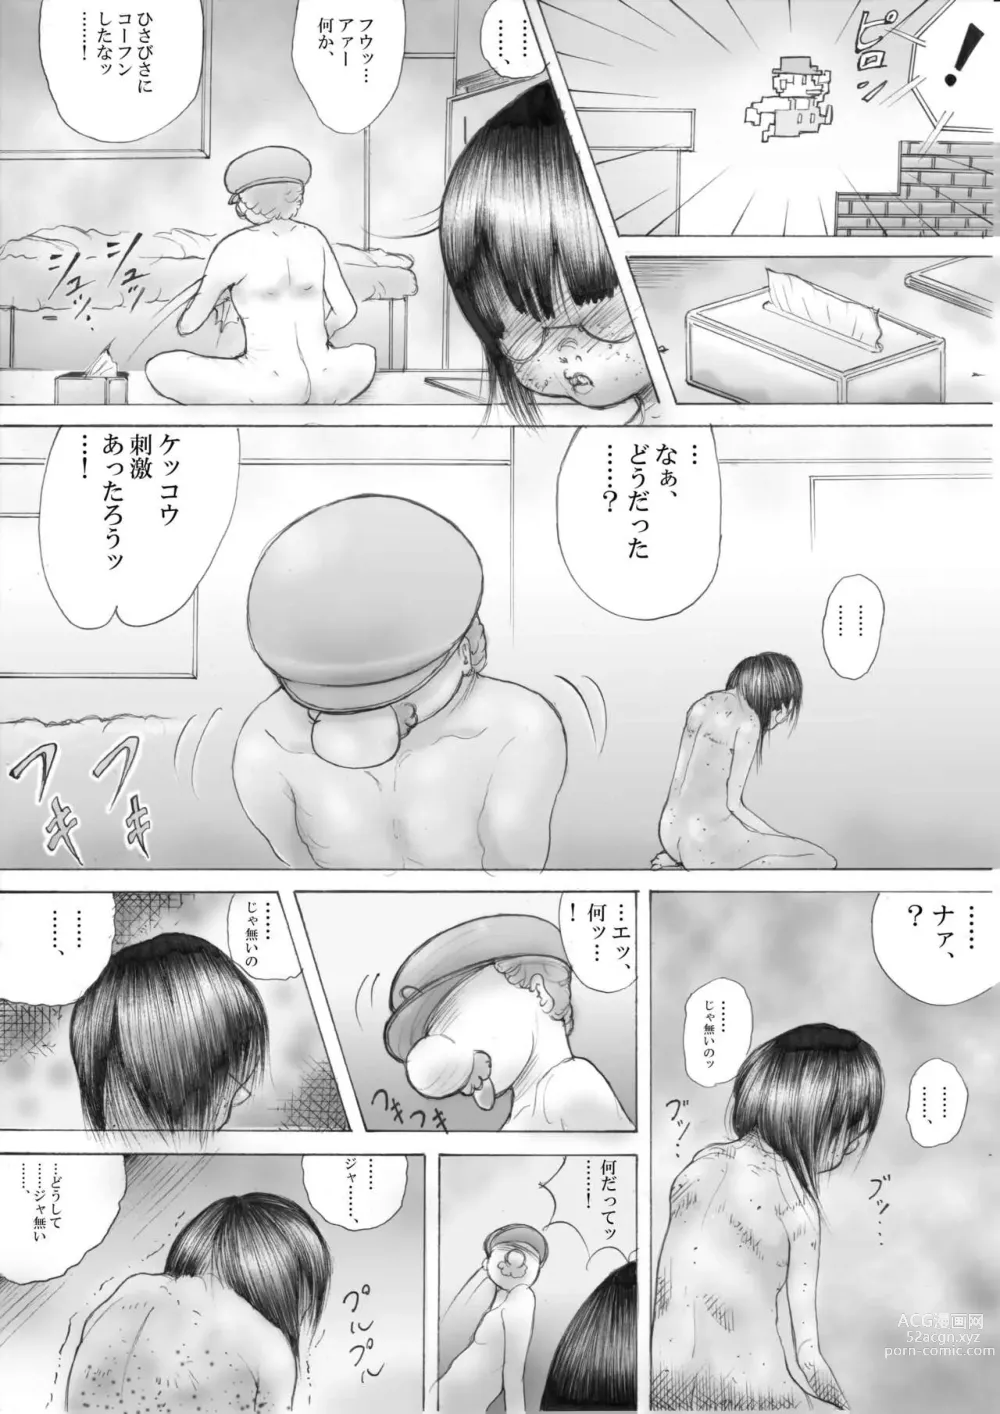 Page 10 of doujinshi Horror Manga 9